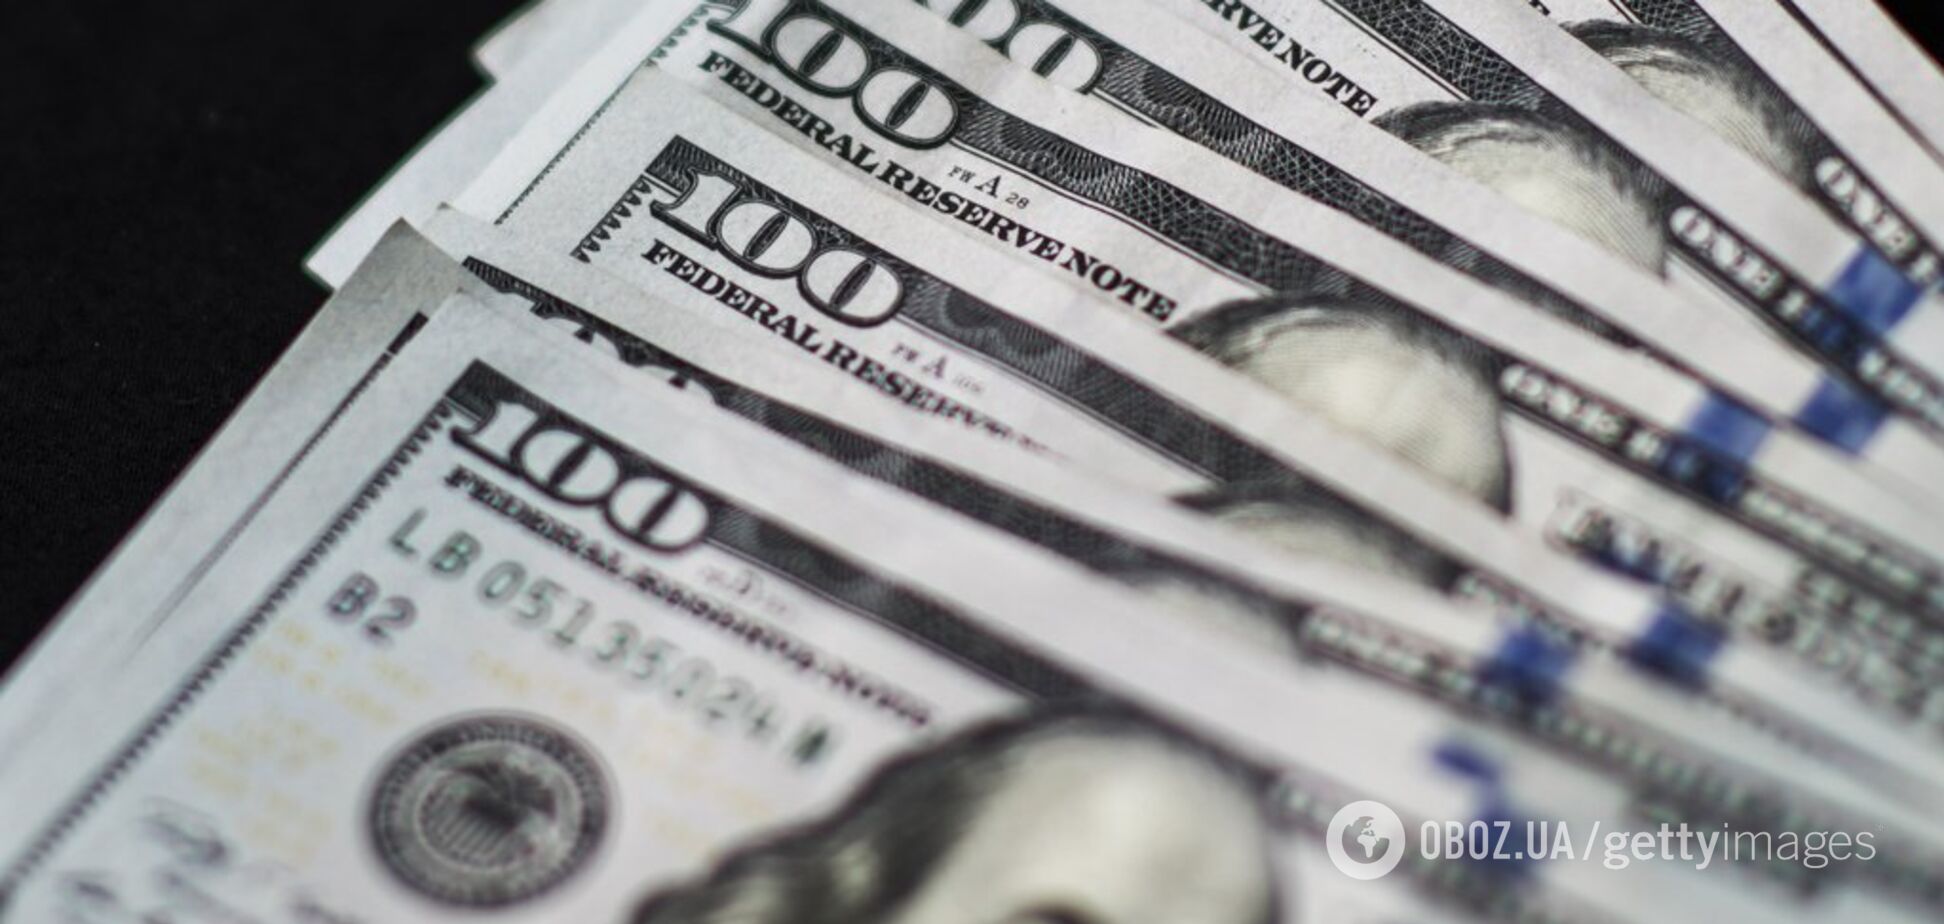 Курс доллара в украинских банках вырос: сколько стоит валюта